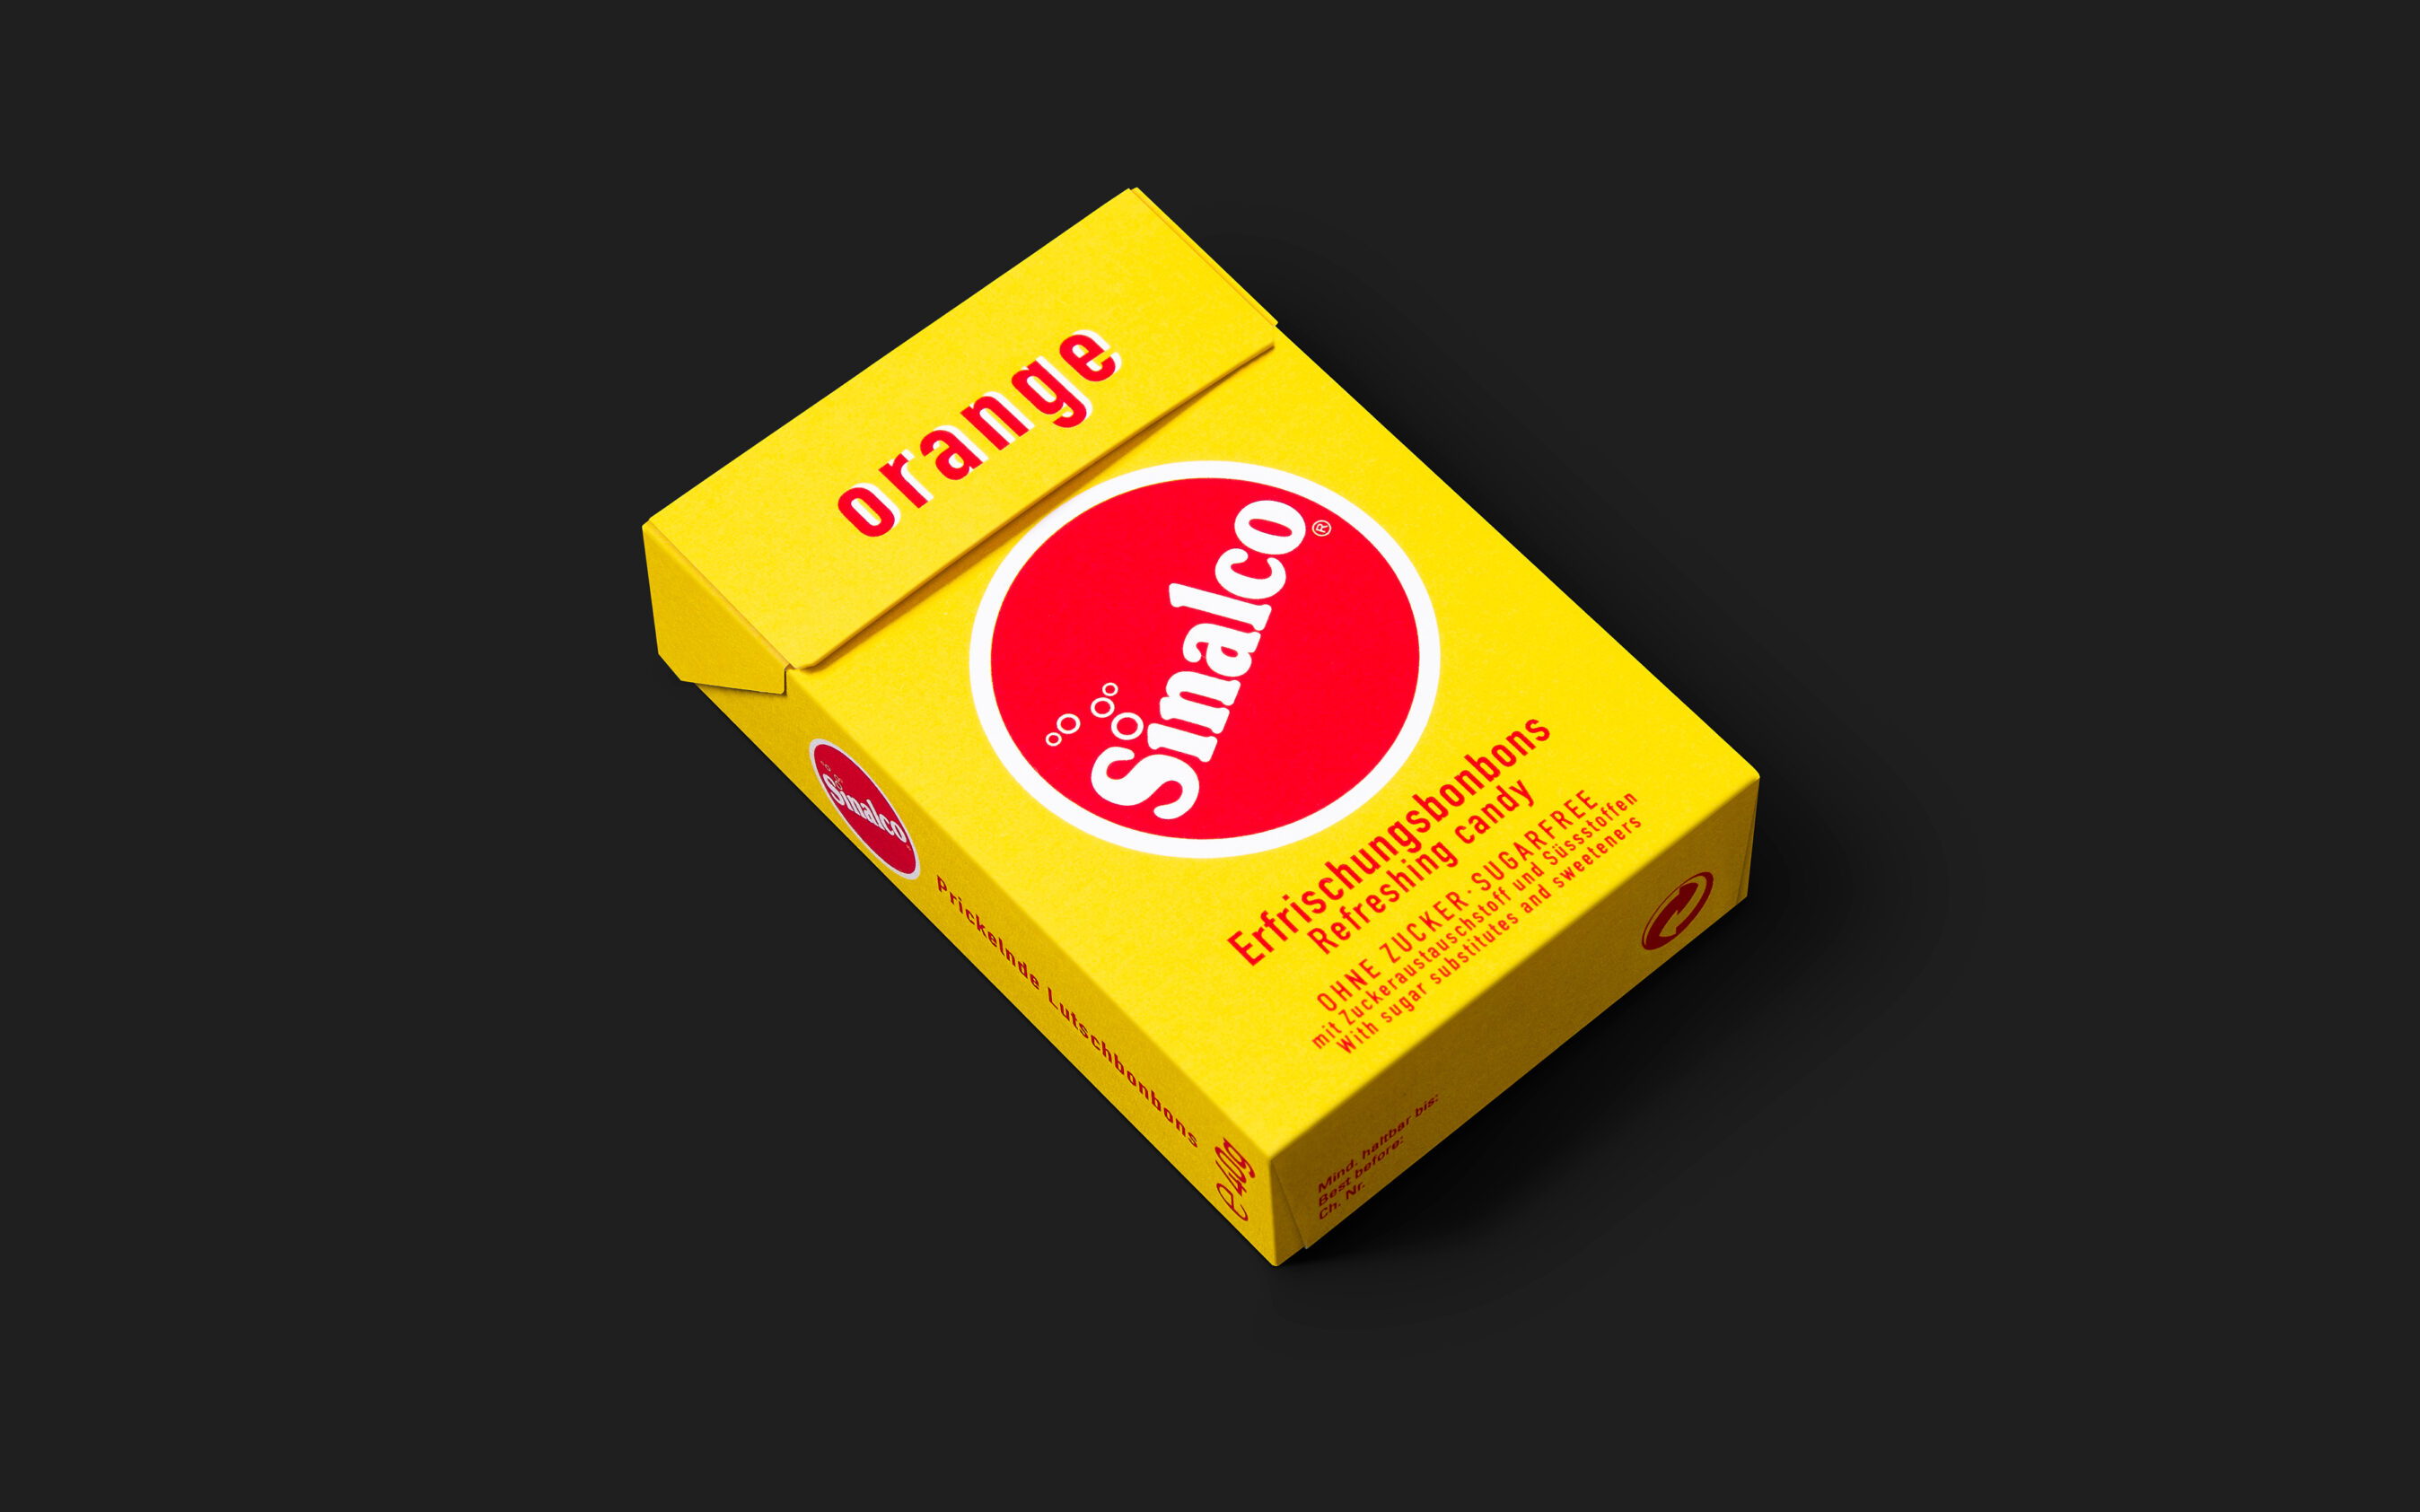 Die gelbe Bonbon-Schachtel liegend auf Schwarzem Hintergrund. Gestaltet von Grafikdesign Cueni Basel.